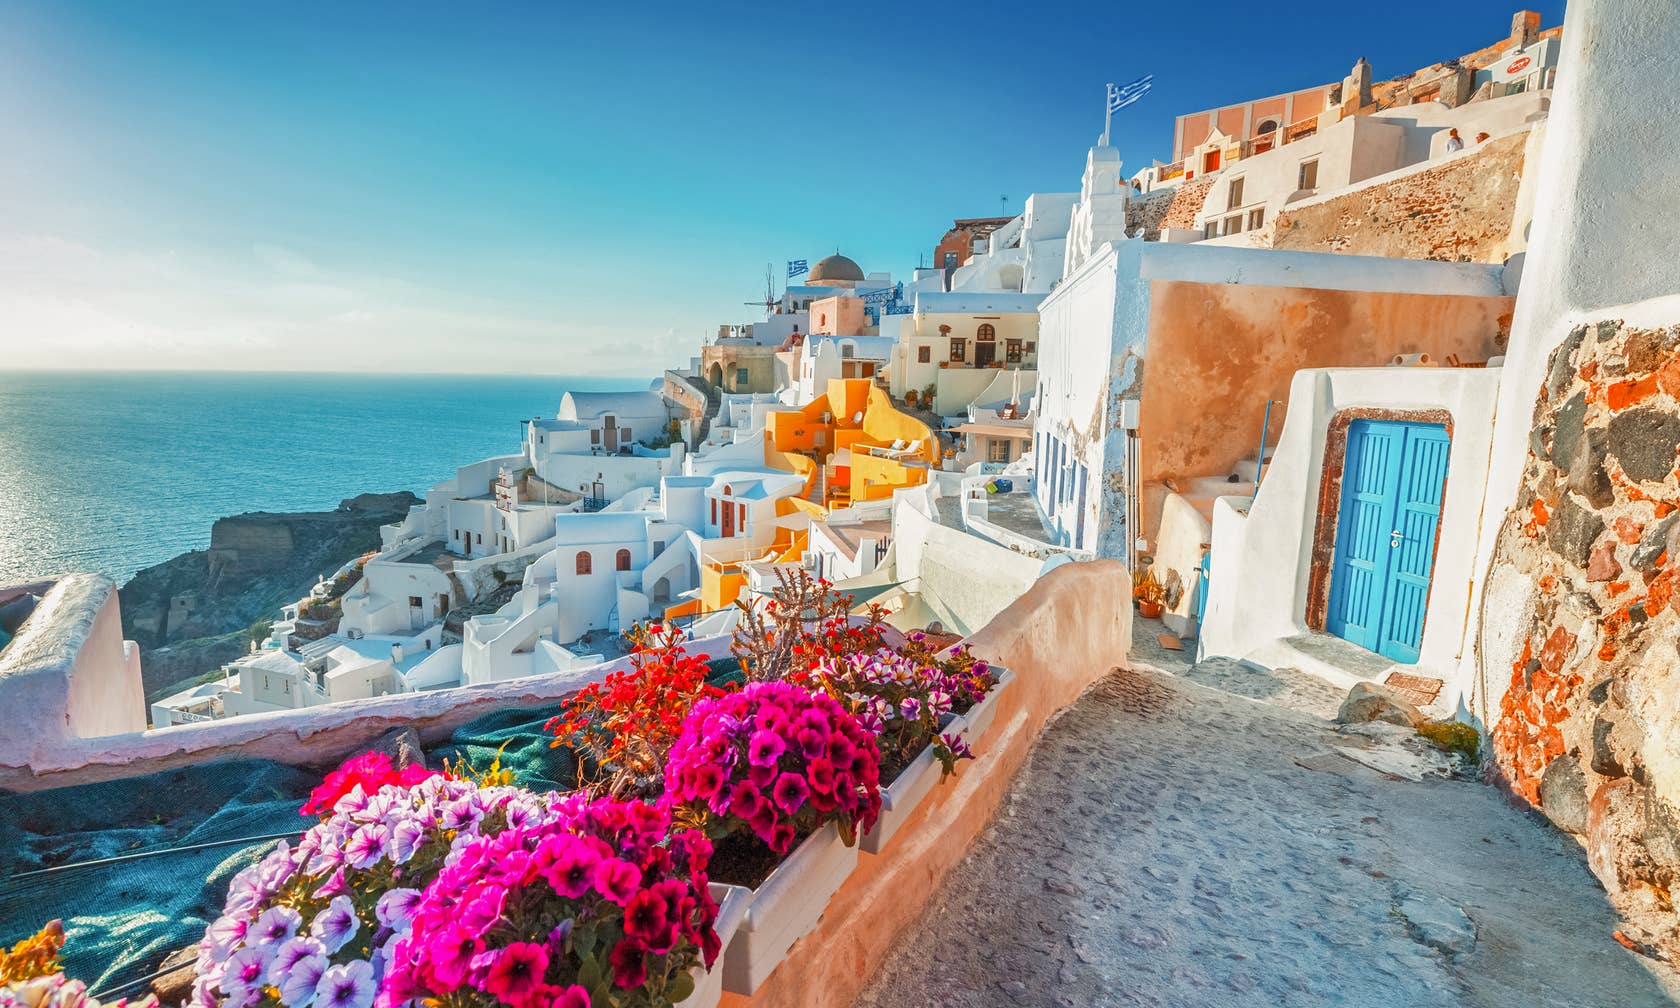 Case de vacanță în Grecia